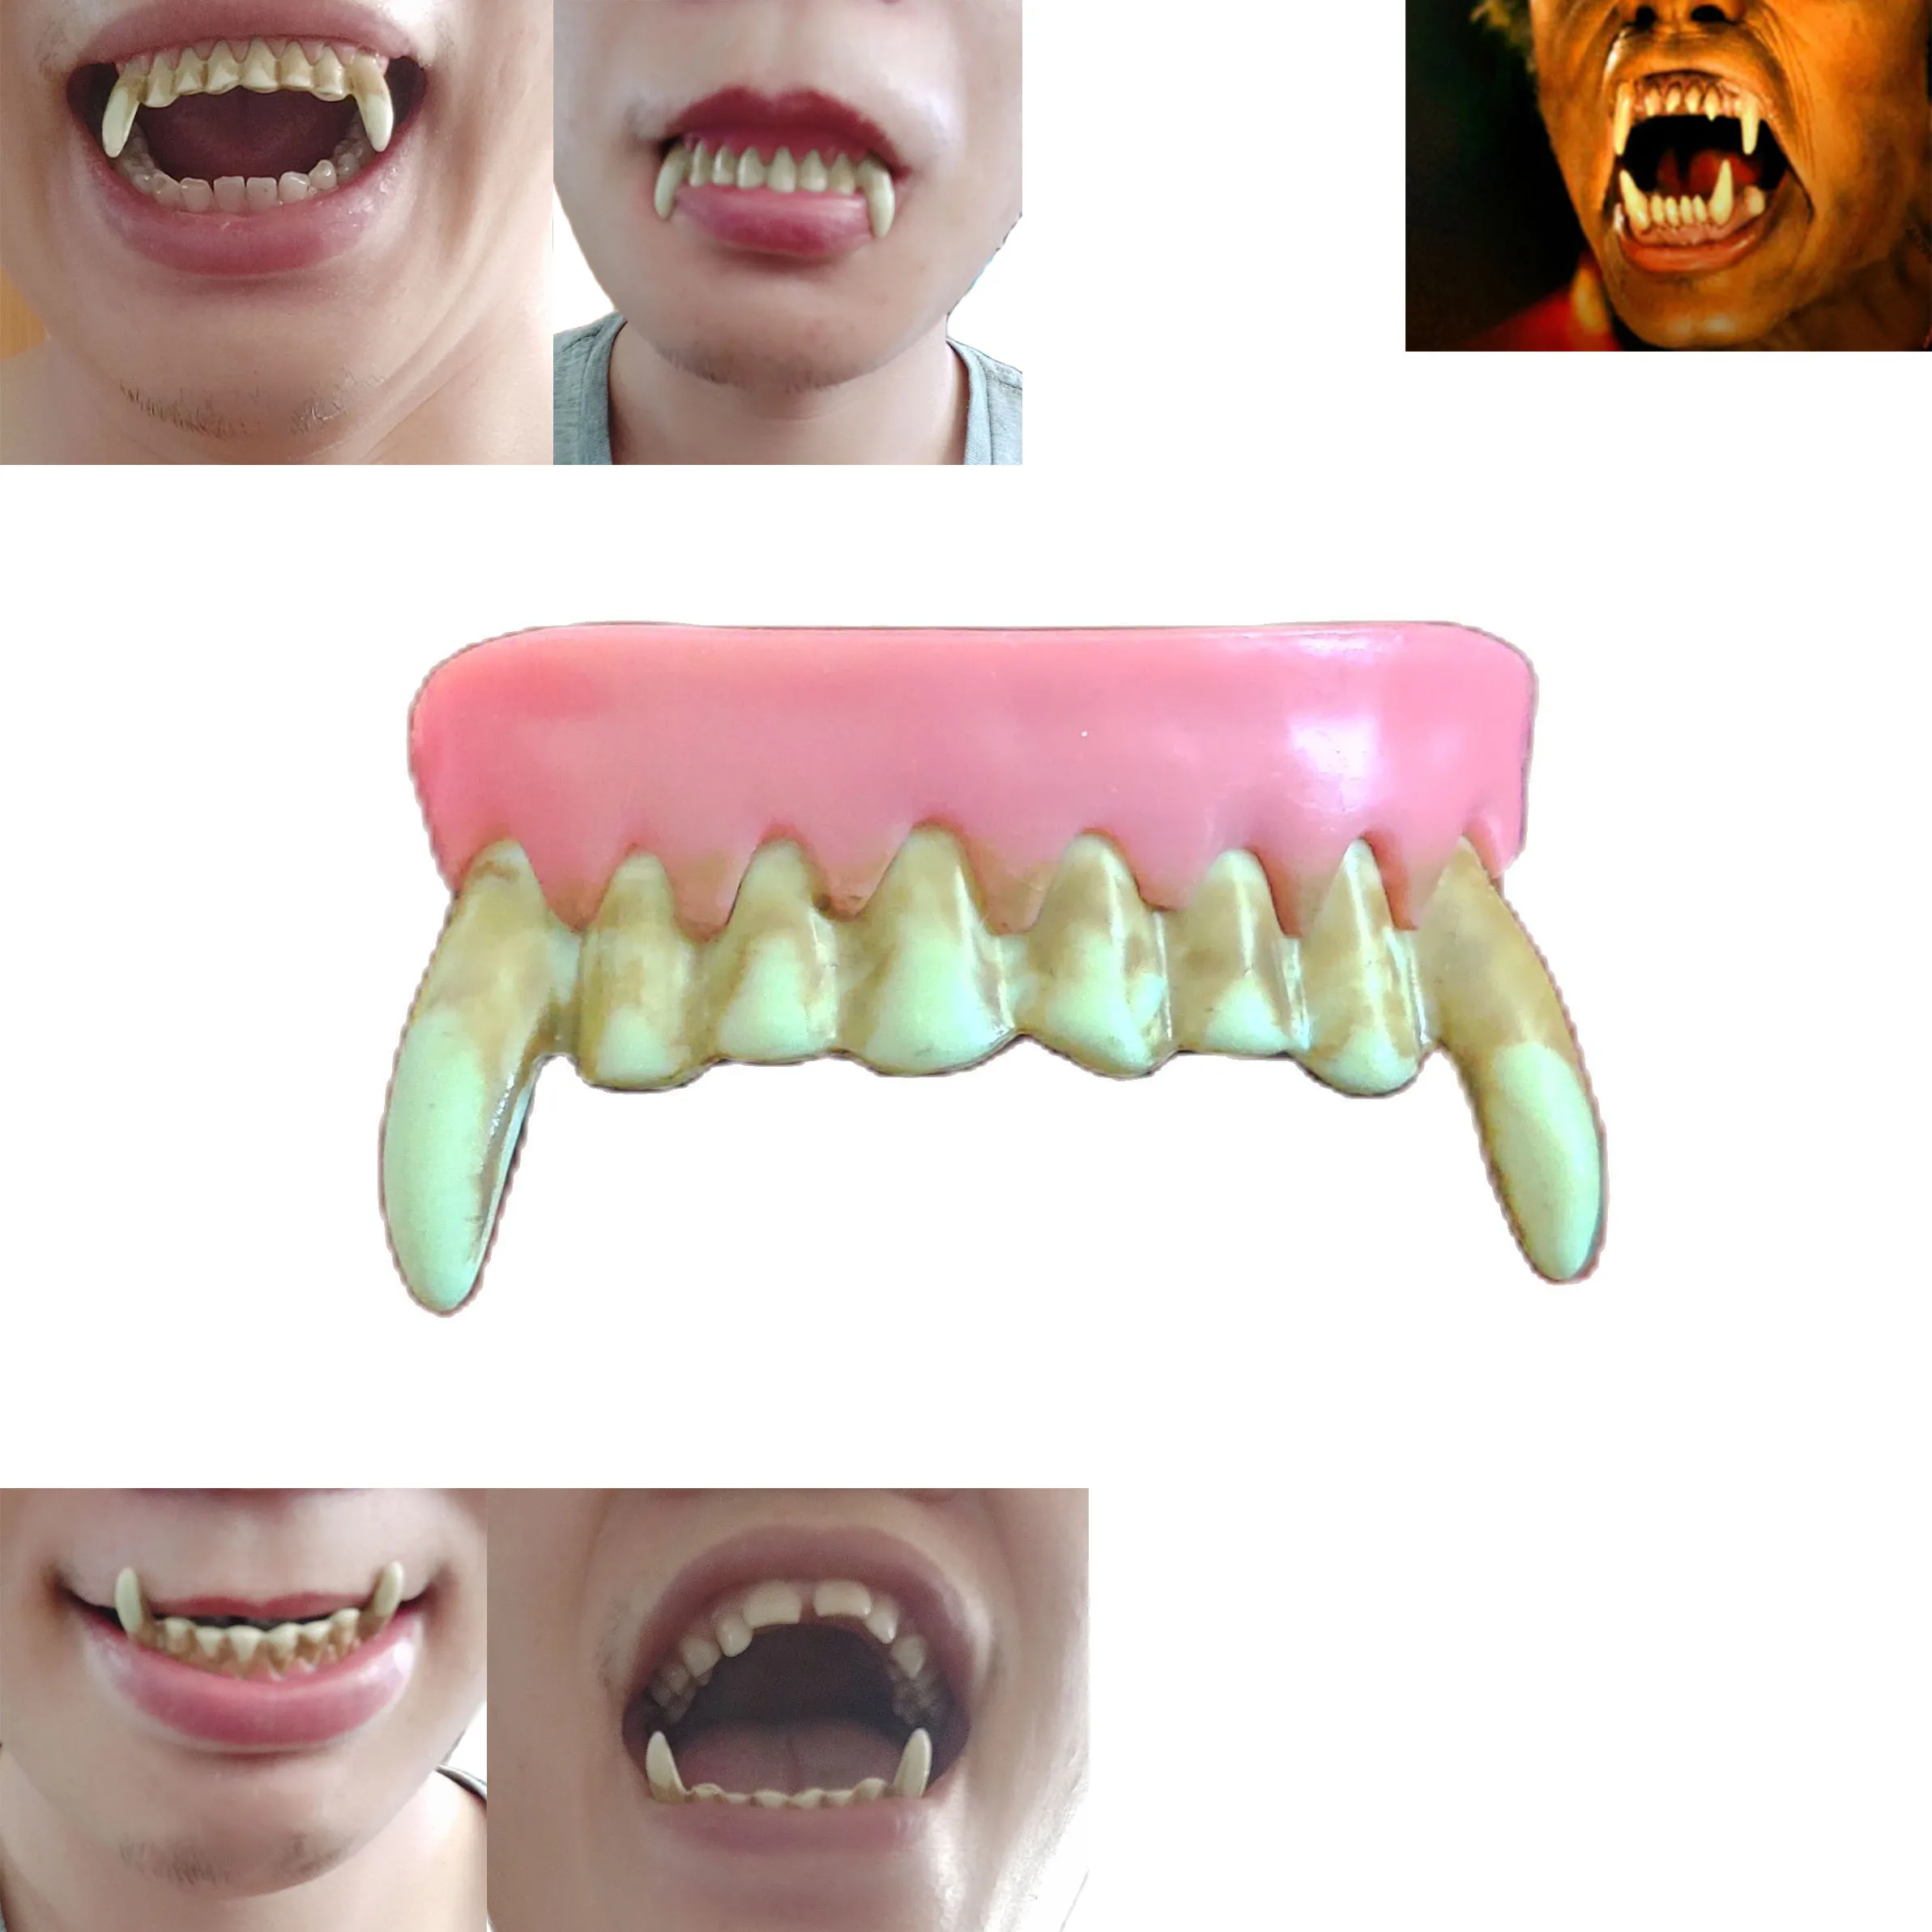 Kostüm passend Zahnersatz Zombie Geist Vampir verrückte Zähne Zähne Werwolf Cosplay Kostüm gefälschte Zähne für König Kong